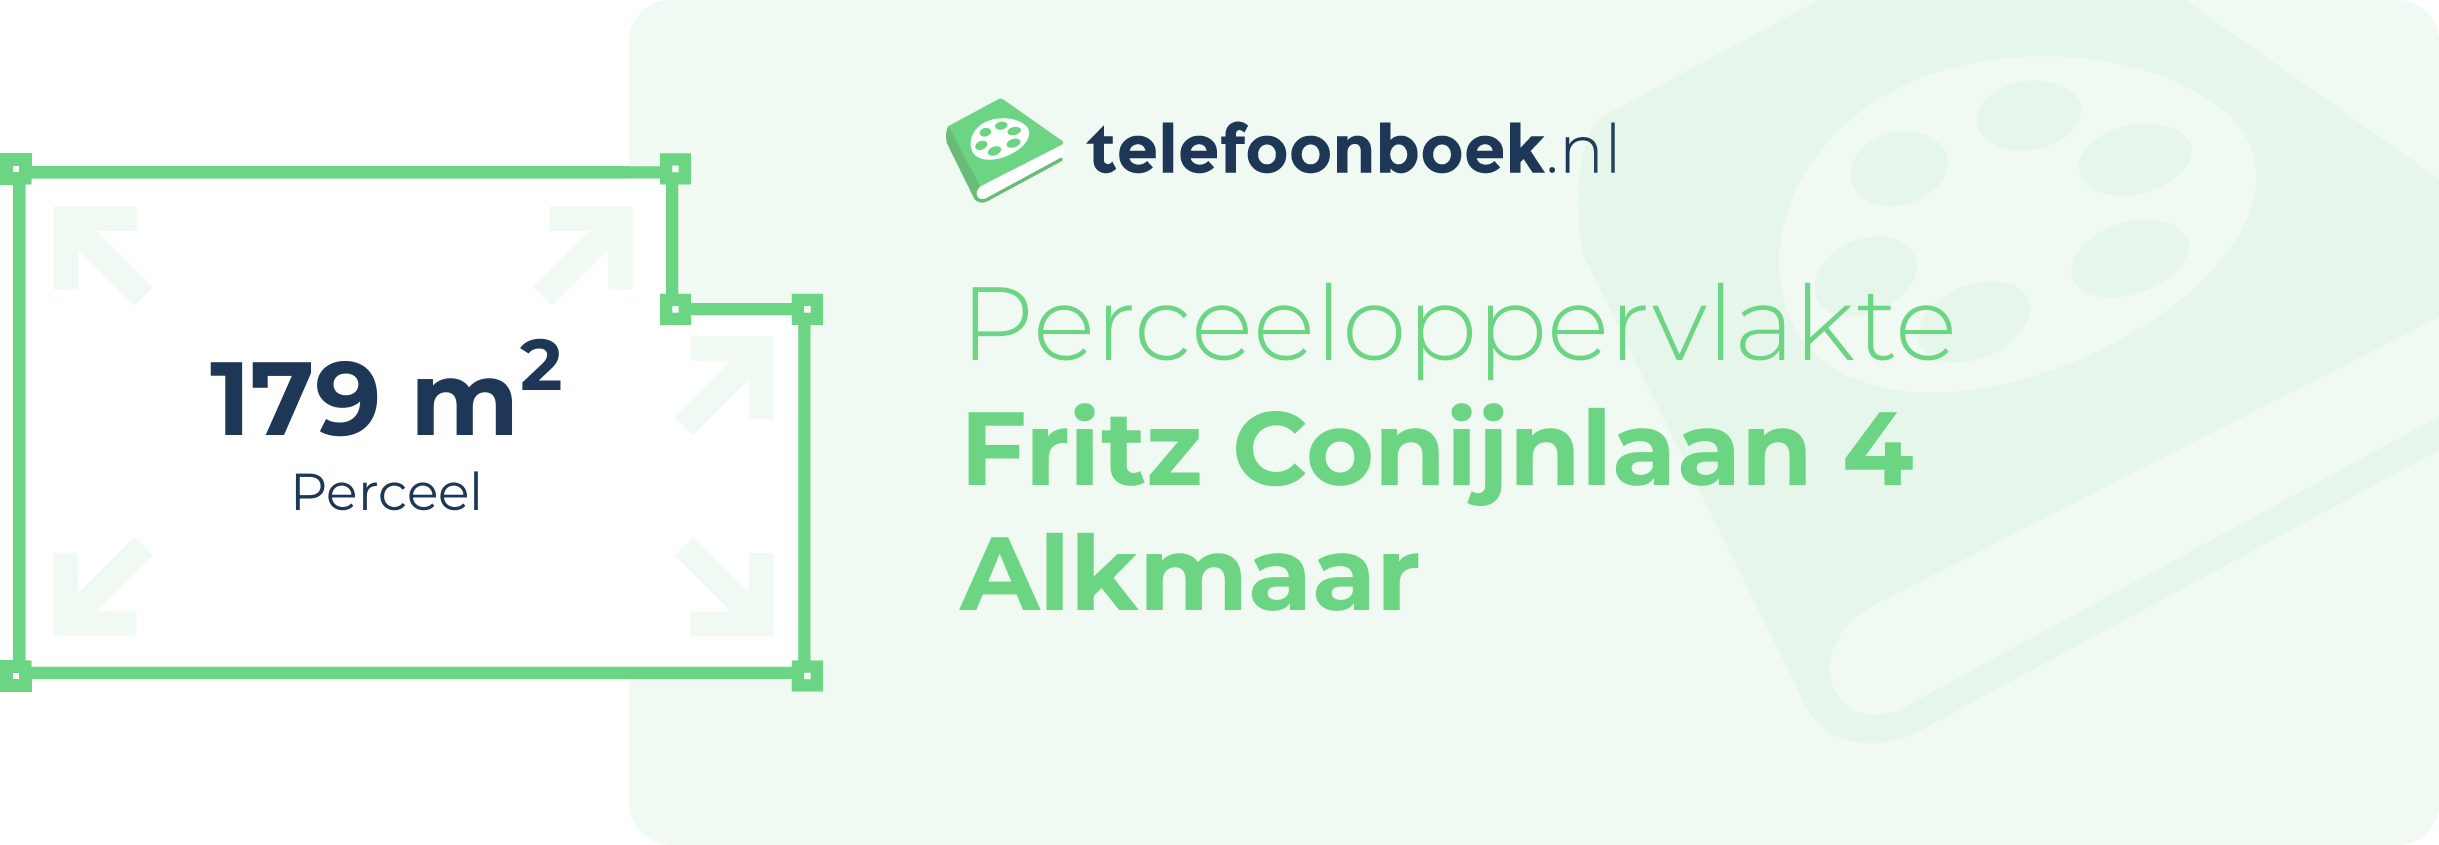 Perceeloppervlakte Fritz Conijnlaan 4 Alkmaar